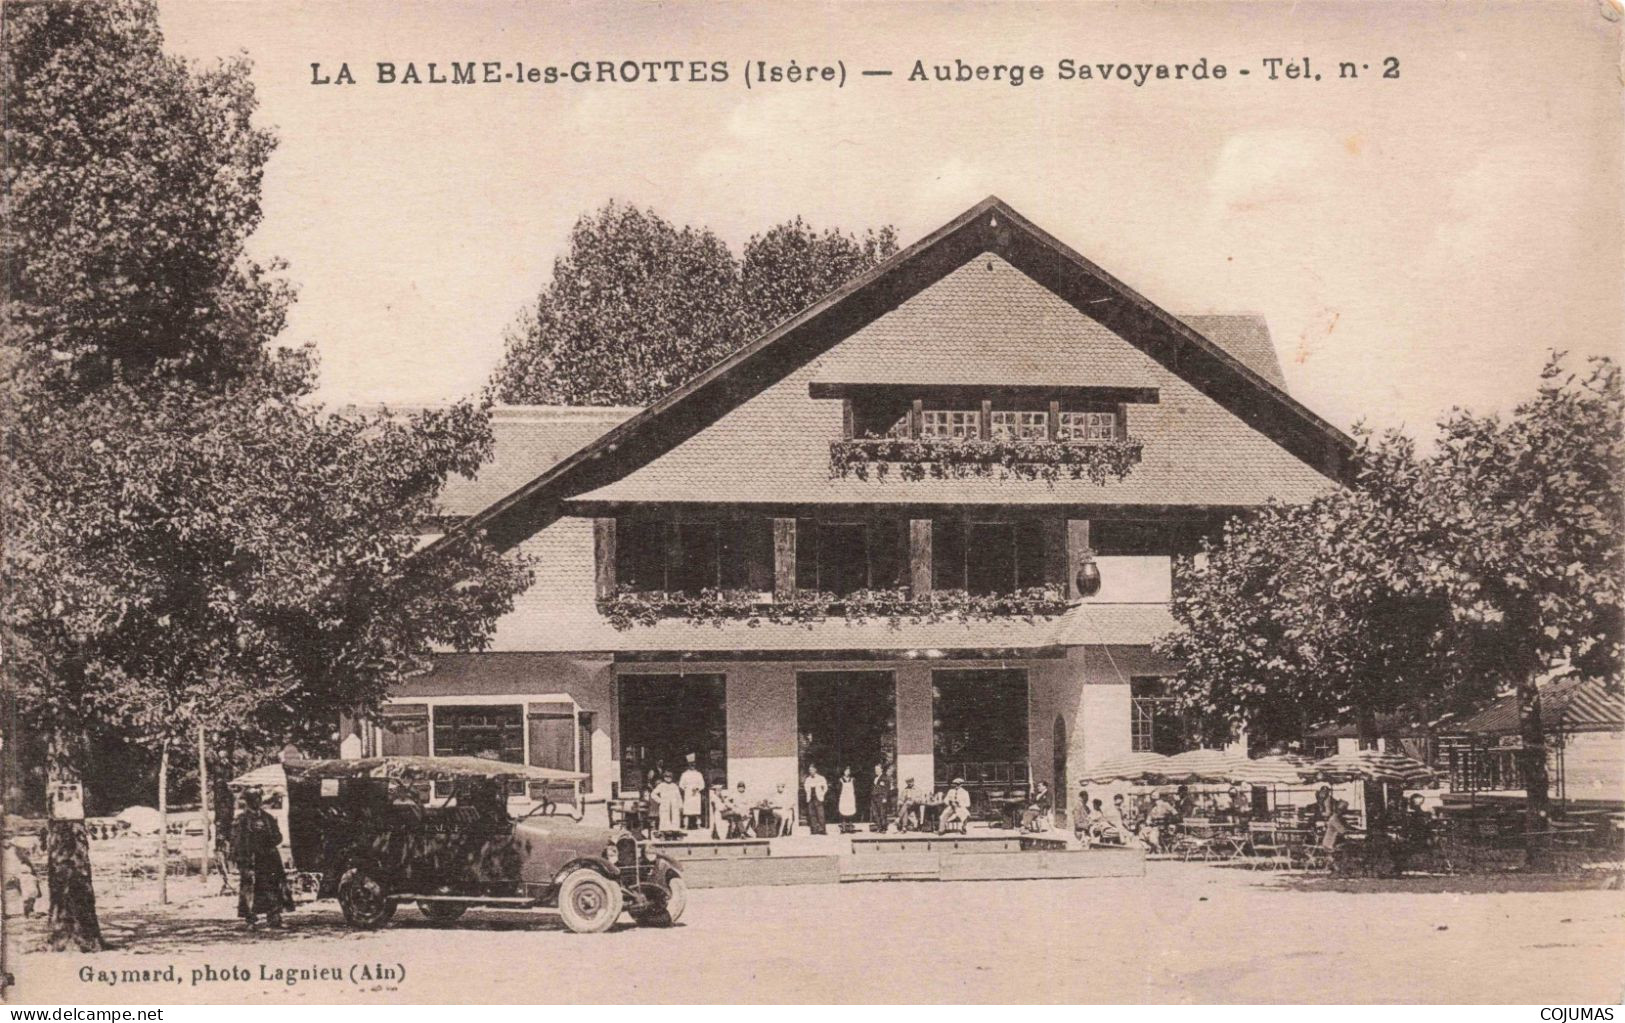 38 - LA BALME LES GROTTES - S17950 - Auberge Savoyarde - Automobile - La Balme-les-Grottes